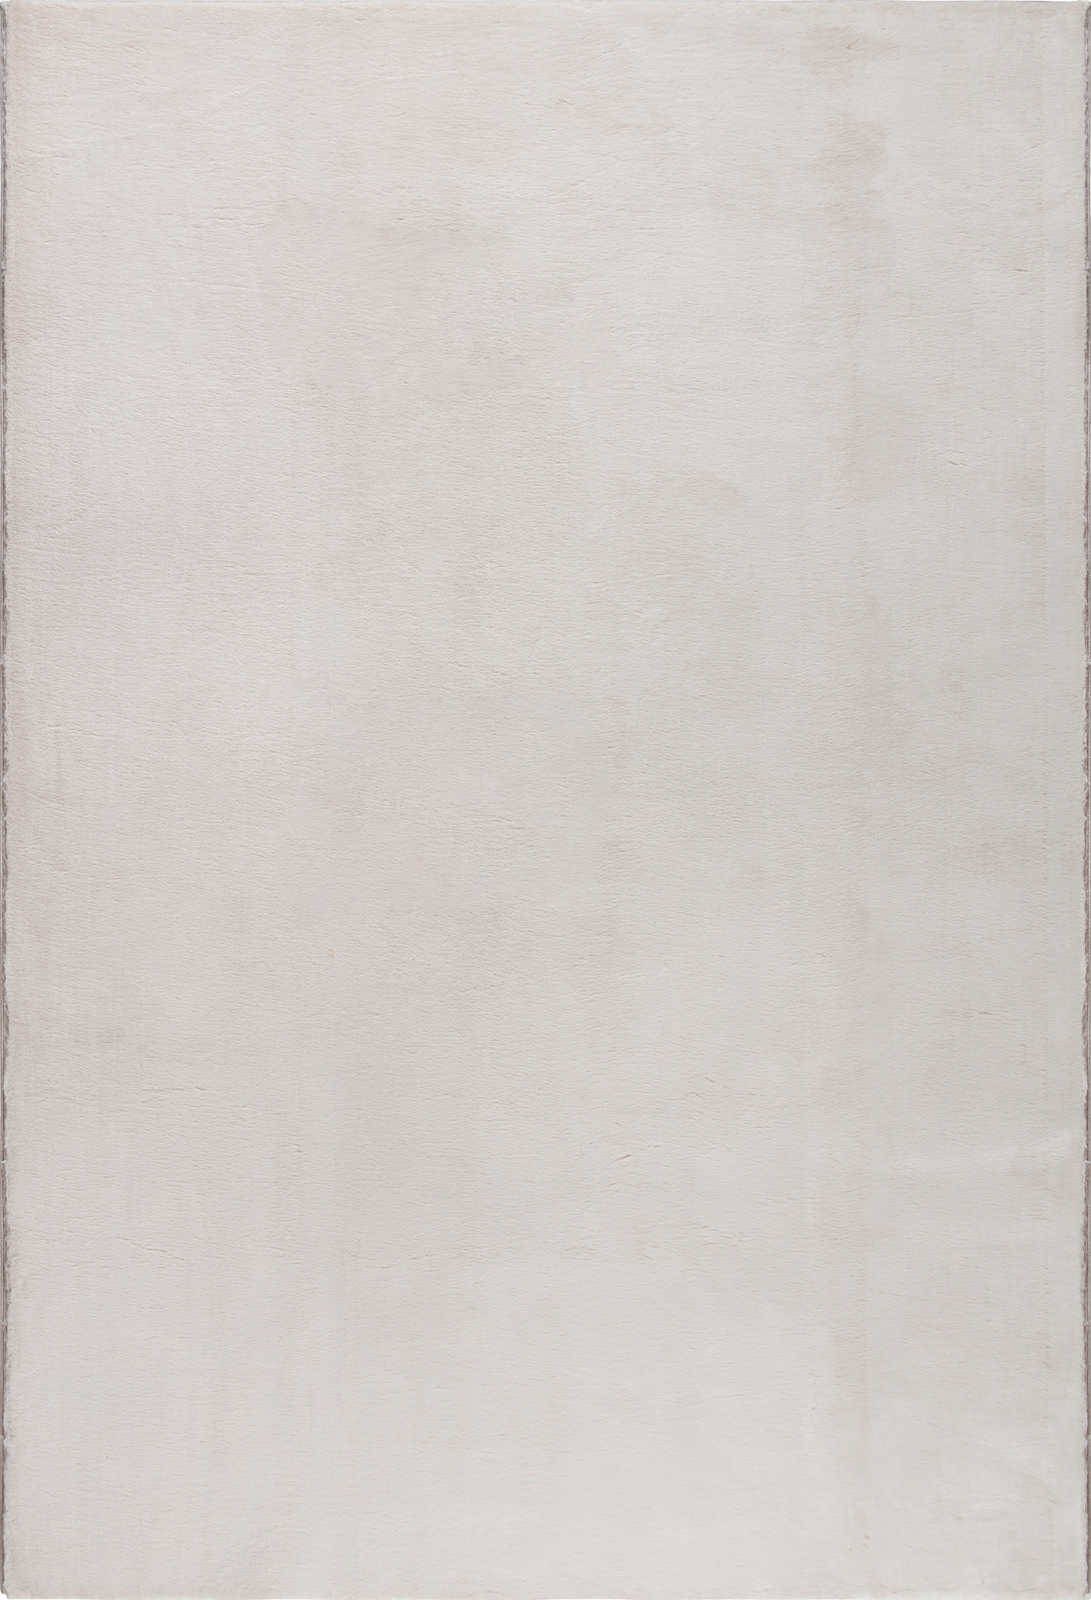             Kuschelweicher Hochflor Teppich in leichtem Beige – 230 x 160 cm
        